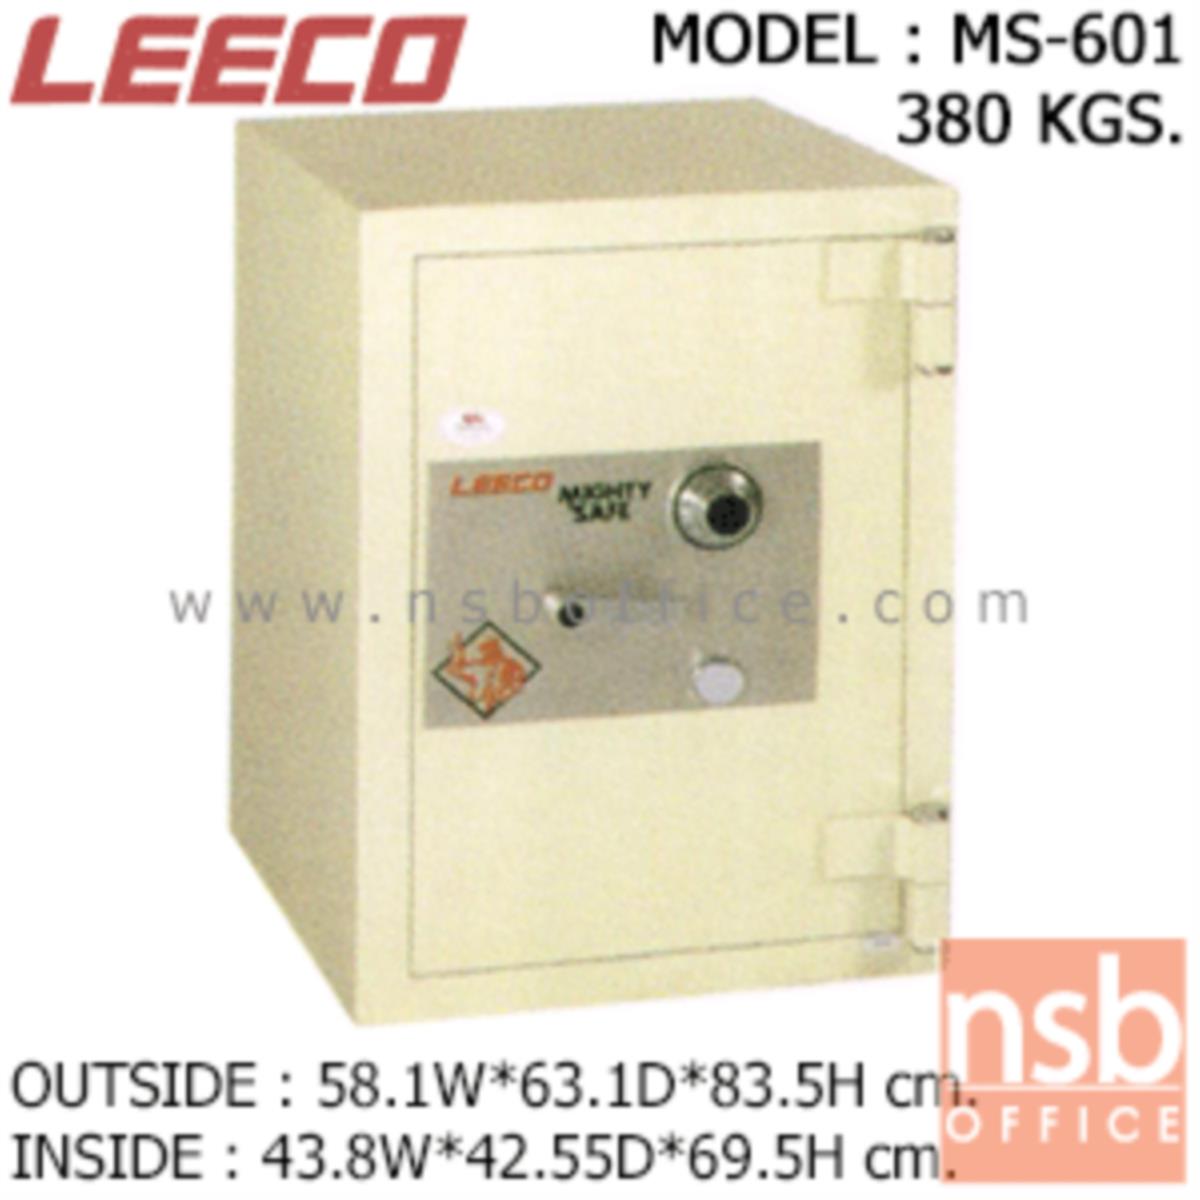 ตู้เซฟนิรภัย 380 กก. ลีโก้ รุ่น LEECO-MS-601 มี 1 กุญแจ 1 รหัส (เปลี่ยนรหัสไม่ได้)   